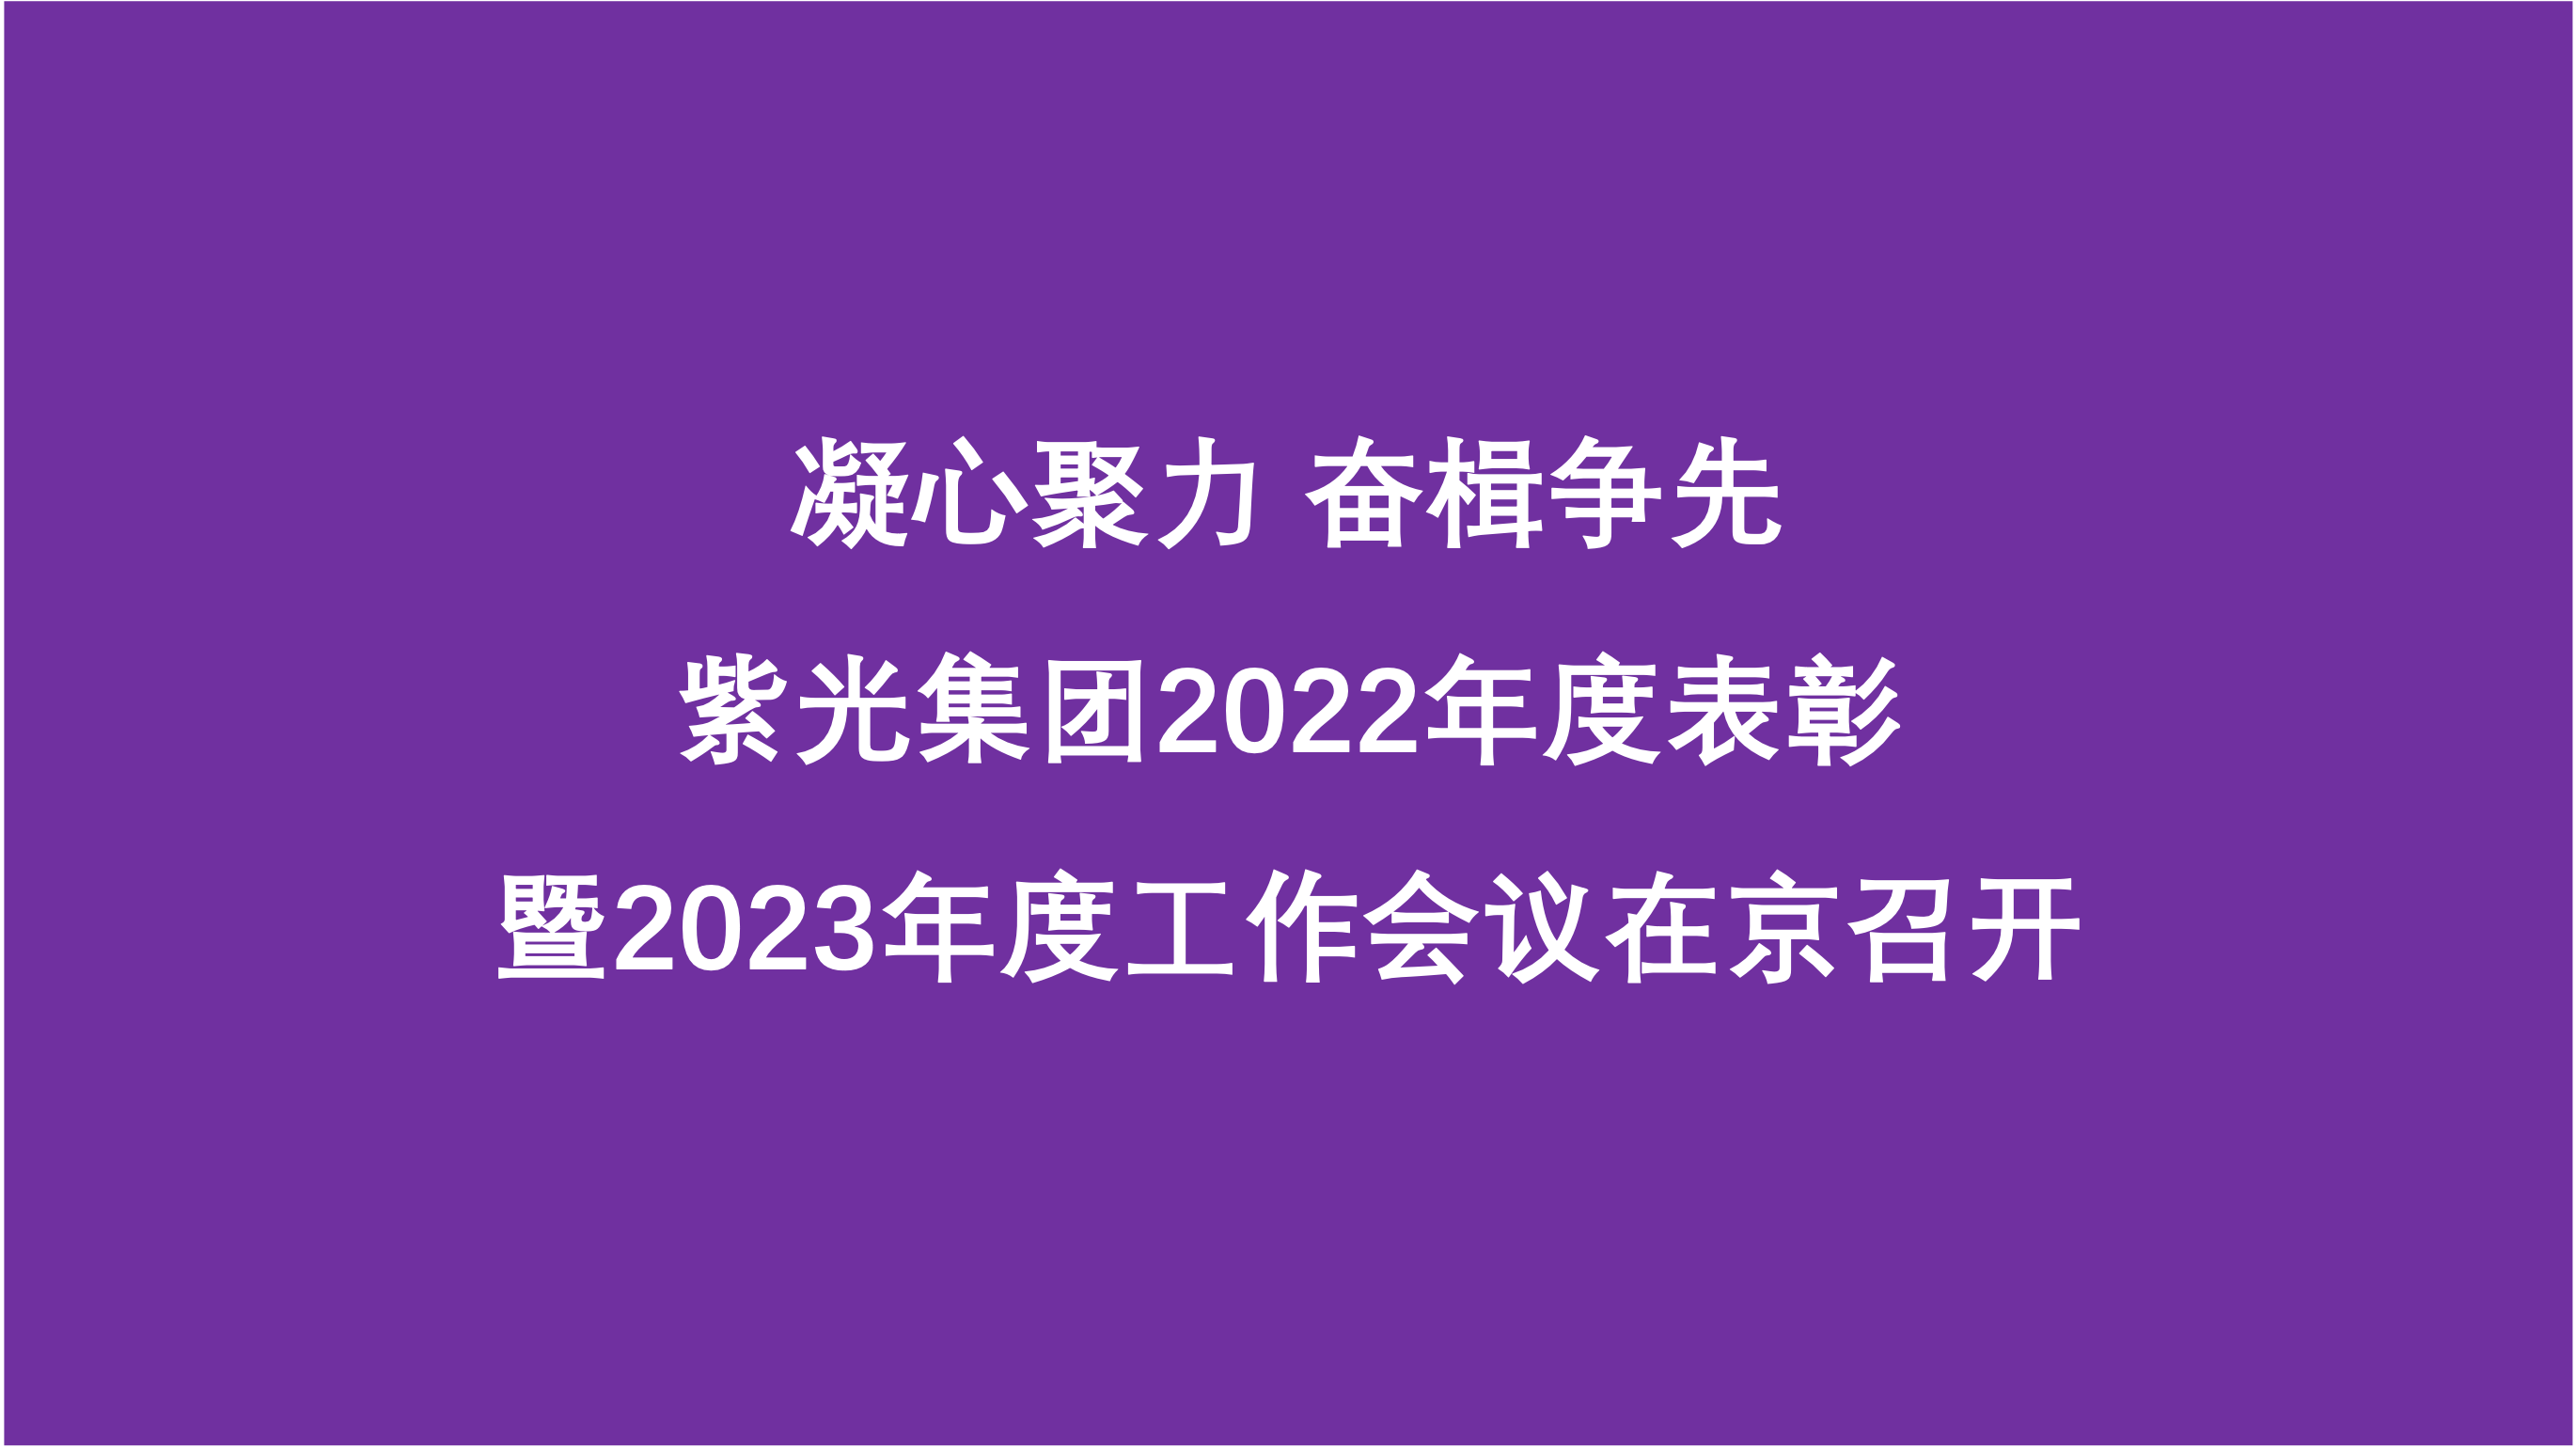 凝心聚力 奋楫争先  紫光集团2022年度表彰暨2023年度工作会议在京召开